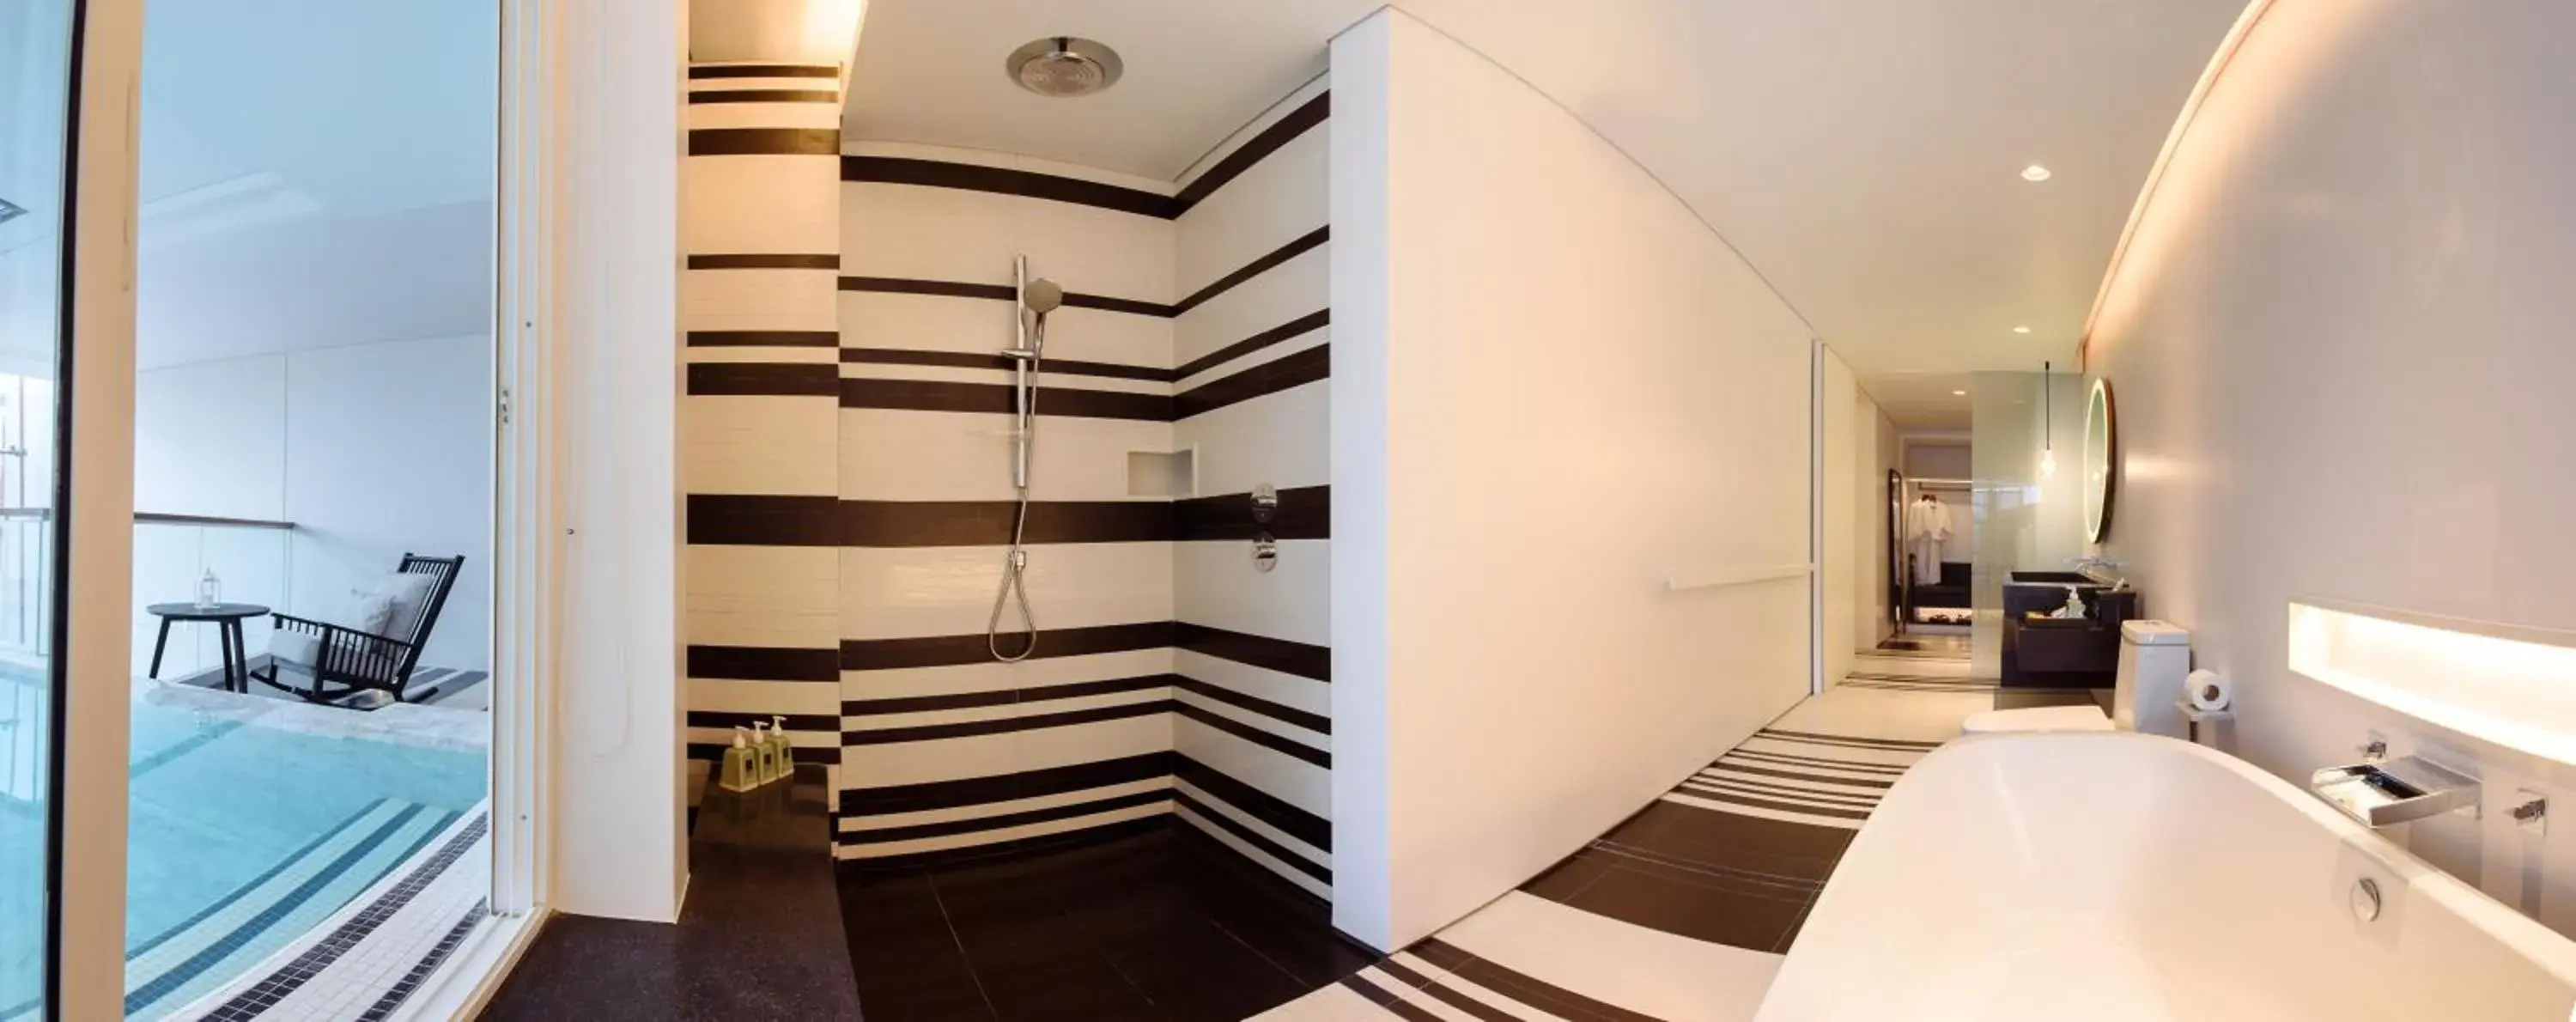 Shower, Bathroom in Veranda Resort & Villas Hua Hin Cha Am